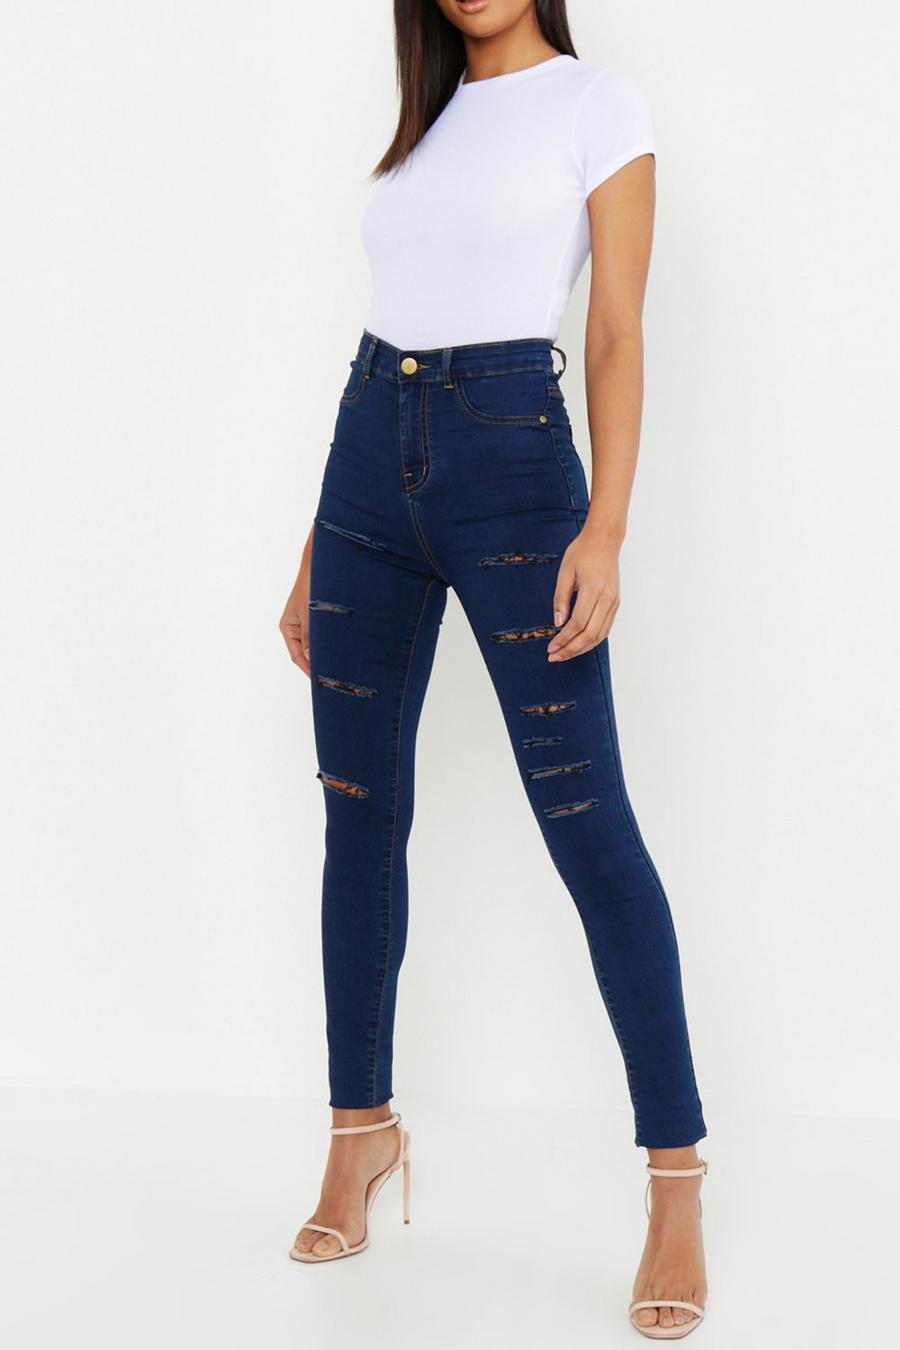 כחול כהה טייץ ג'ינס עם חתכים רוחביים לנשים גבוהות image number 1